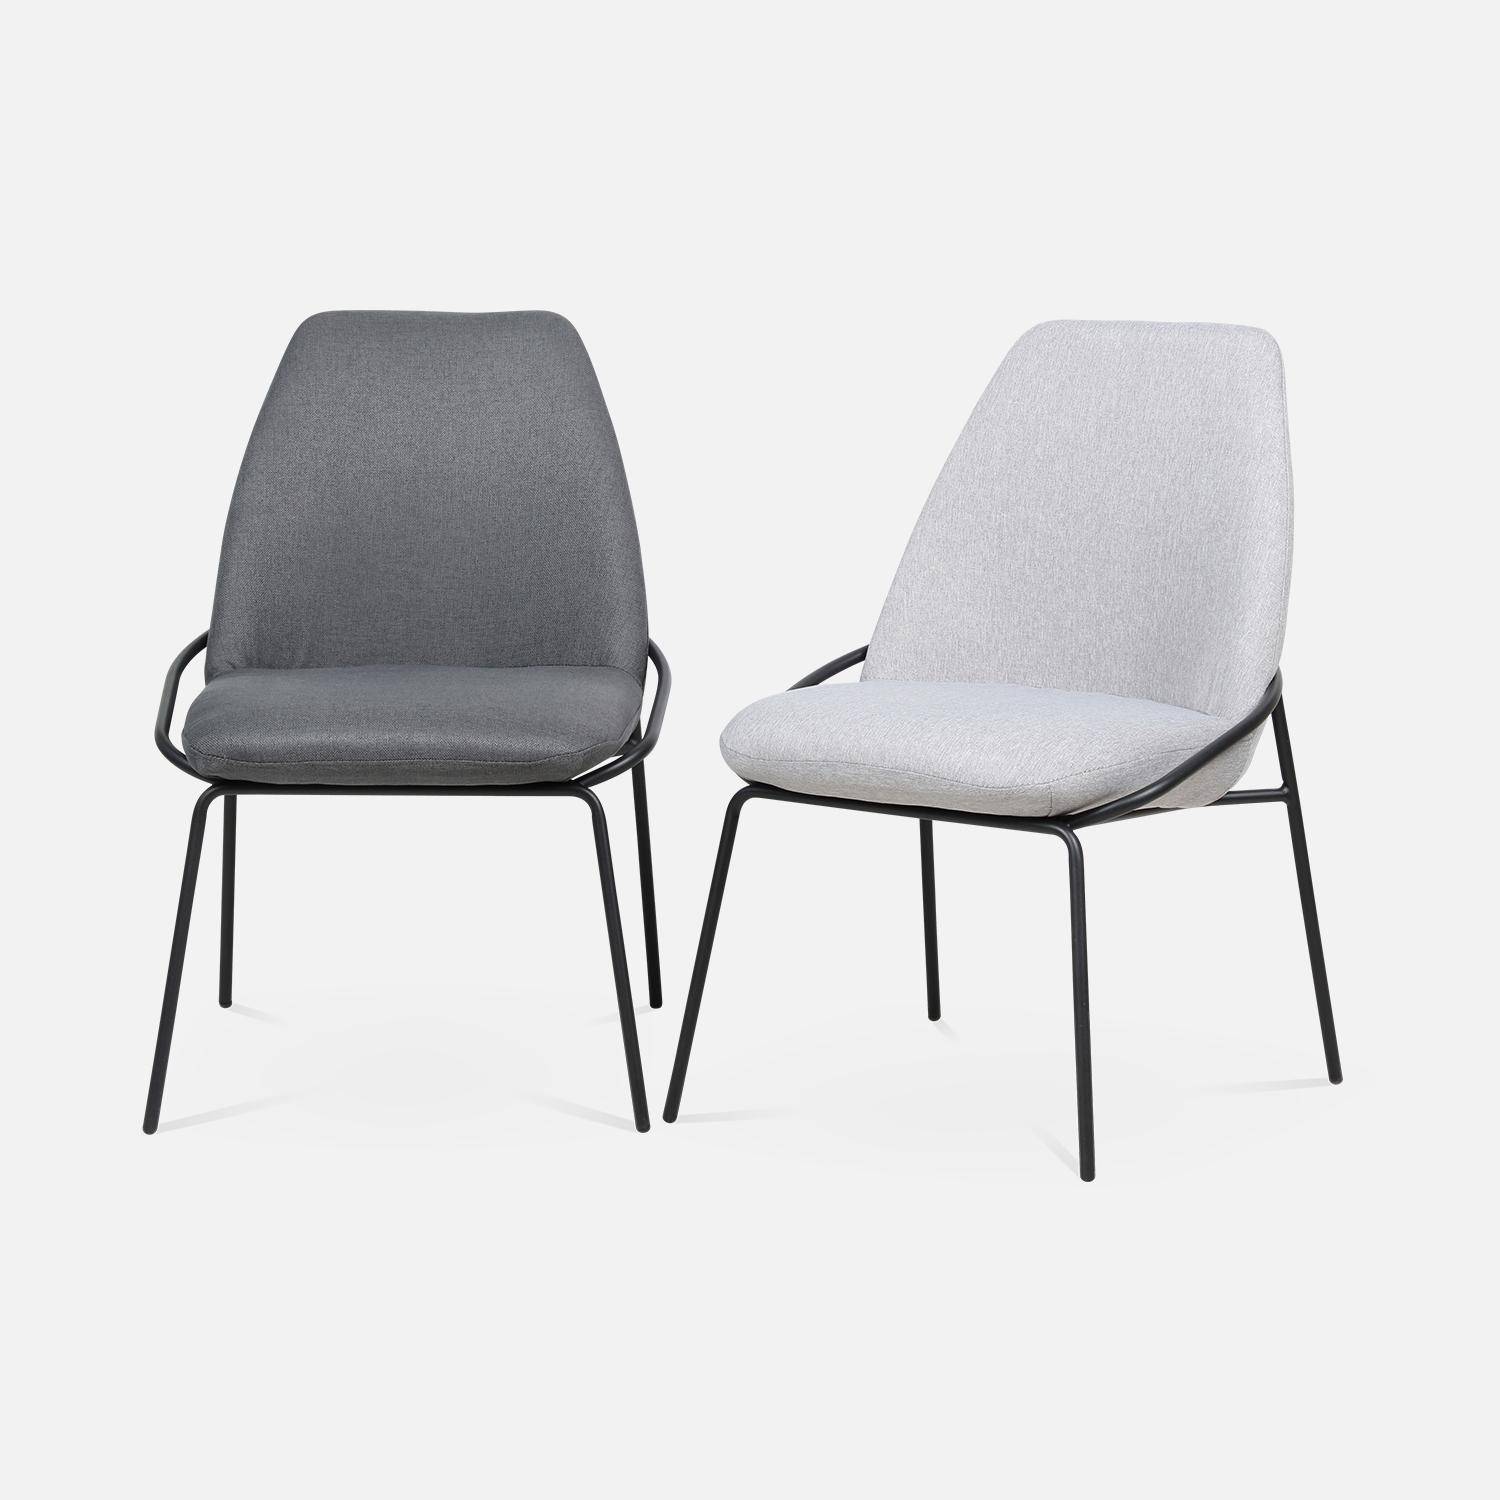 Chaise design - Lisbet - en tissu gris clair, 56,5 x 63 x 82,5cm Photo8